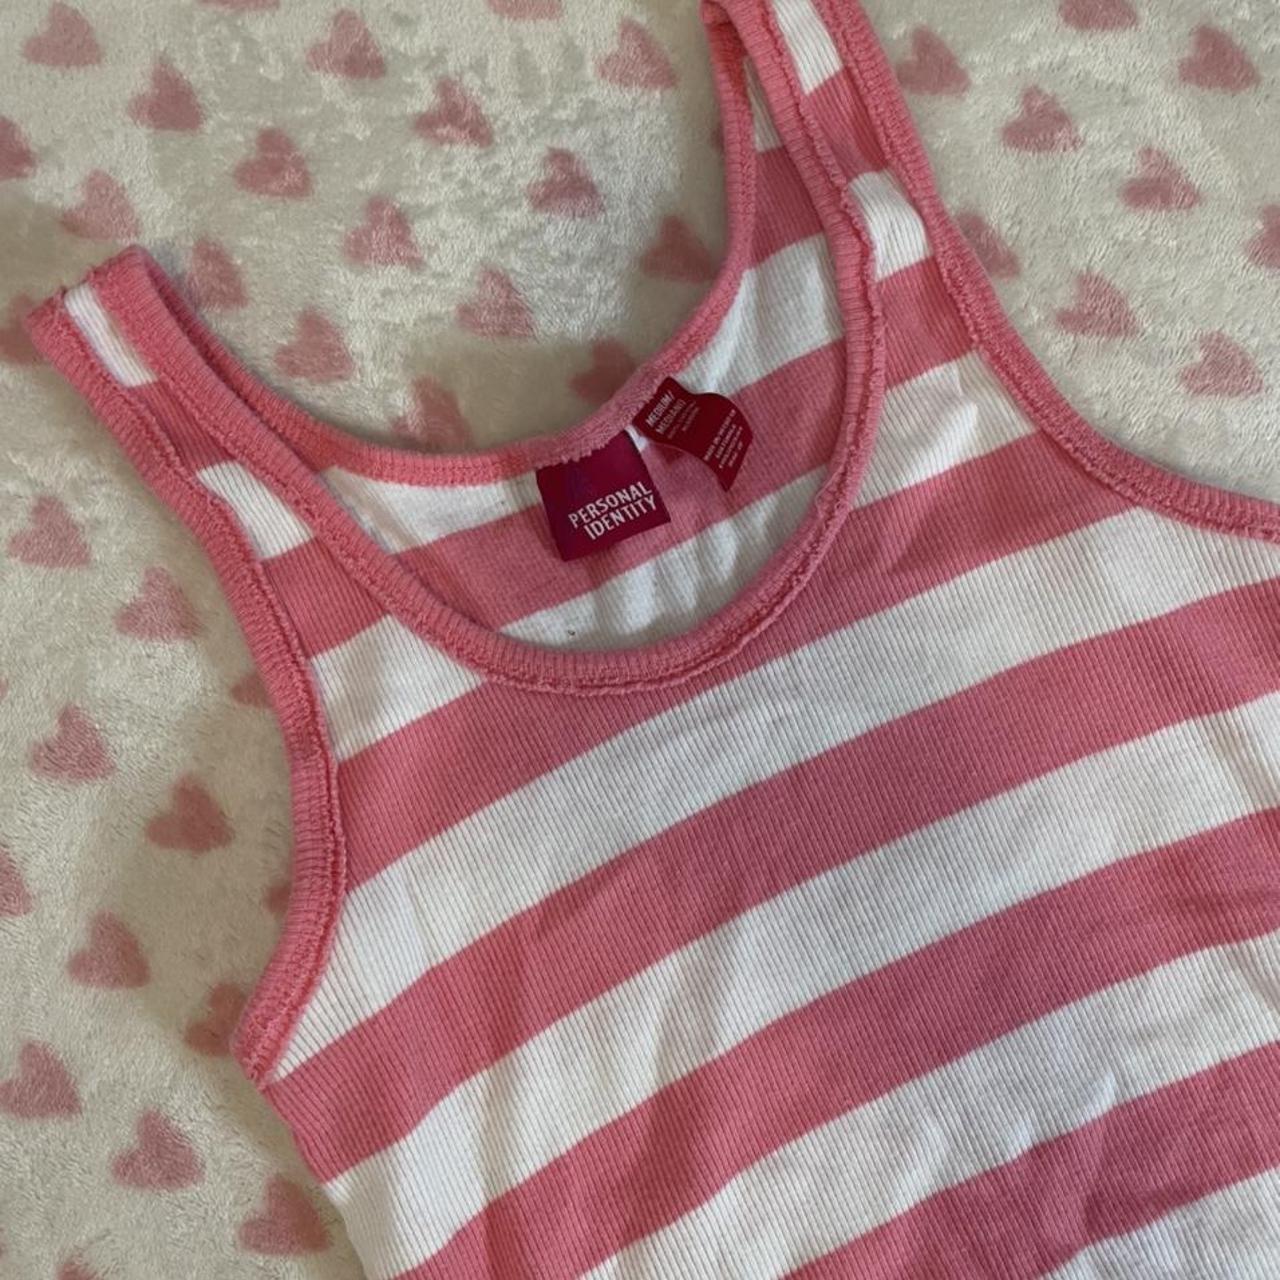 Vintage Victoria Secret Pink striped tank top -fits - Depop